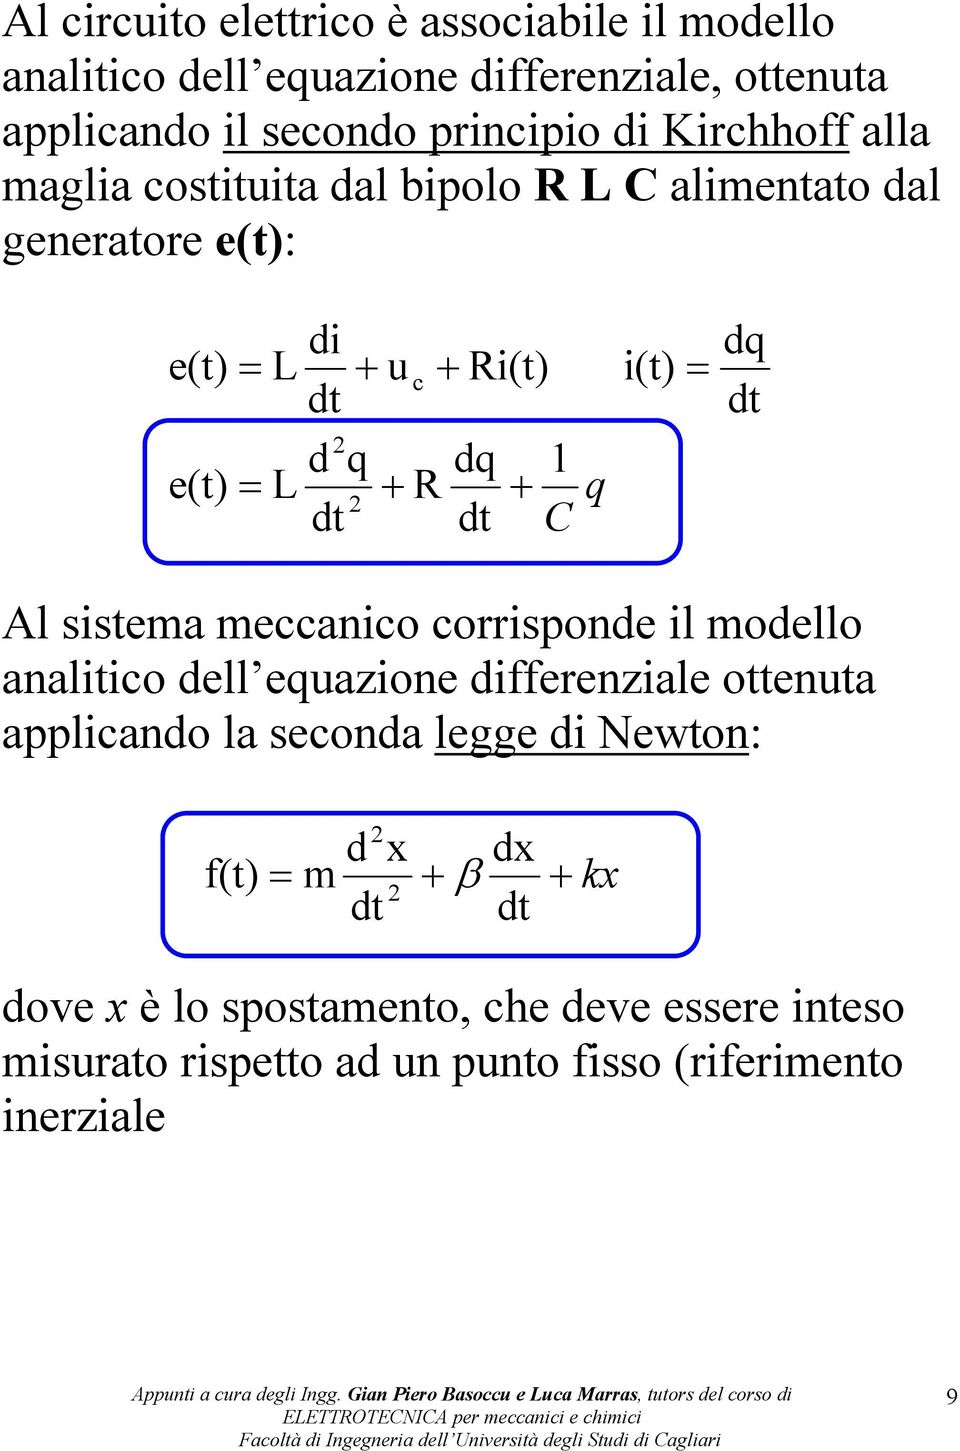 dq d Al sisema meccanico corrisponde il modello analiico dell equazione differenziale oenua applicando la seconda legge di